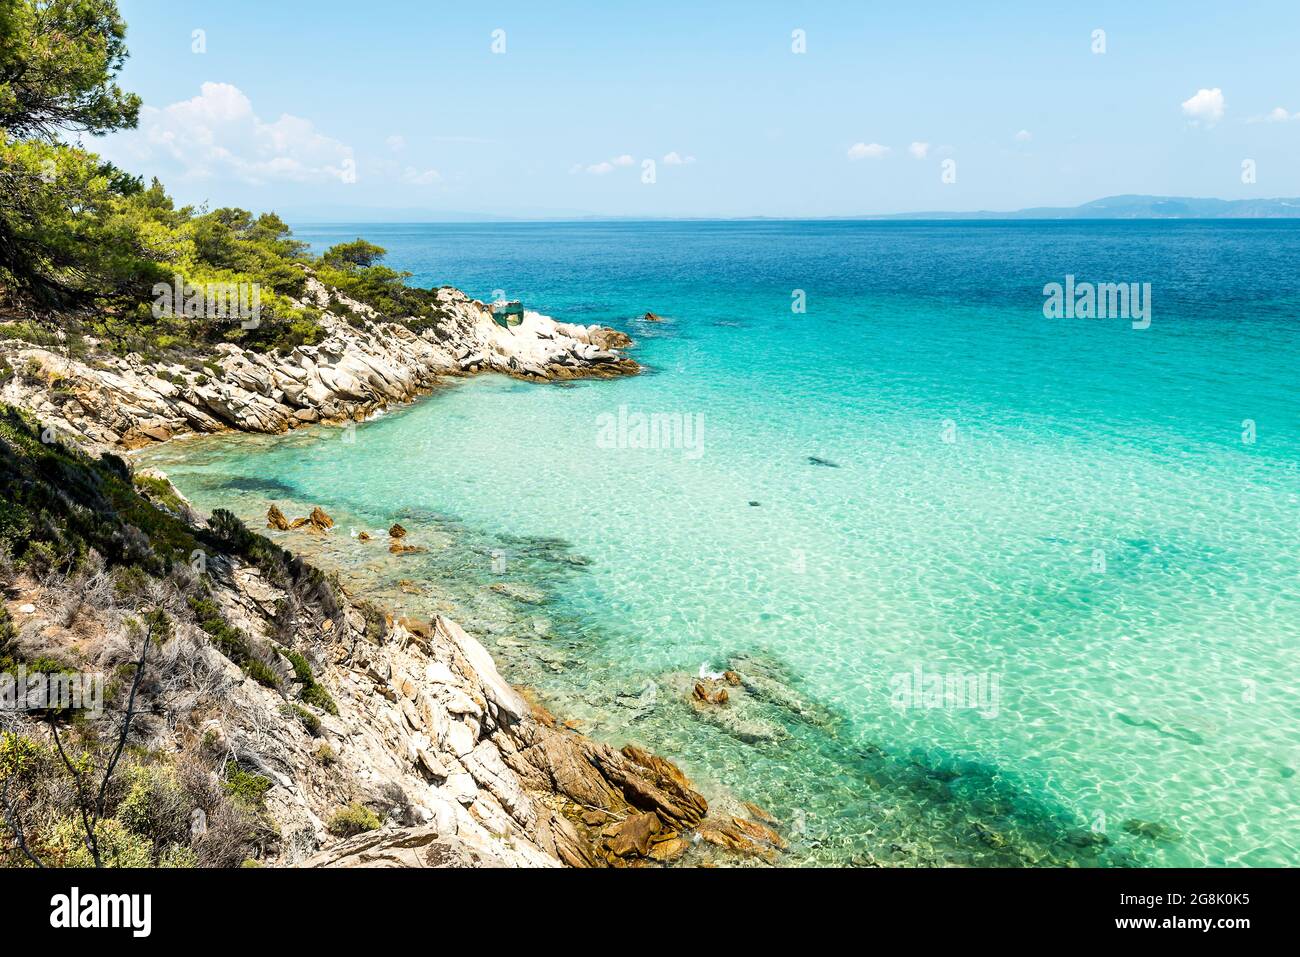 Paesaggio della costa del mar Egeo con acqua acquamarina, vista vicino alla spiaggia di Mega Portokali (Sithonia, Chalkidiki, Grecia) Foto Stock